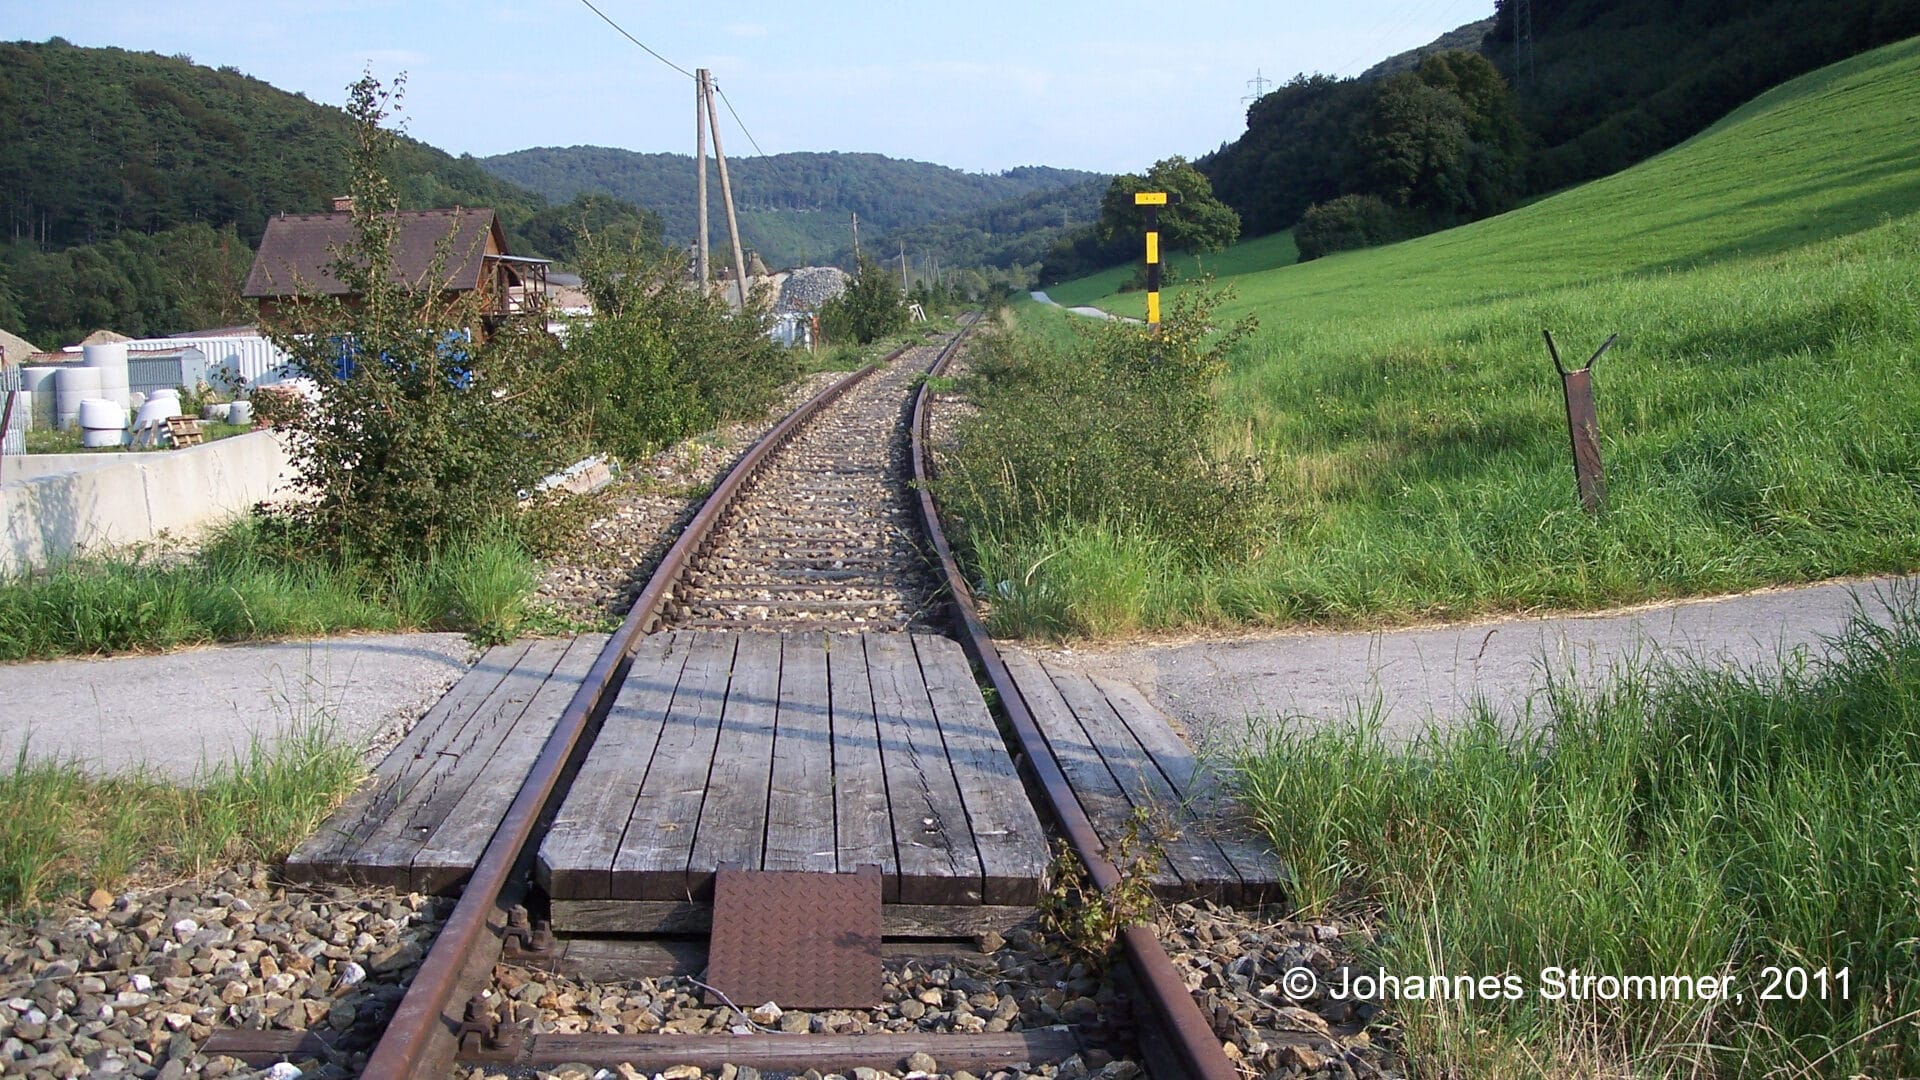 Bahnstrecke Weissenbach-Neuhaus - Hainfeld (Leobersdorfer Bahn); Bahnübergang zwischen Altenmarkt und Tasshof 2011.